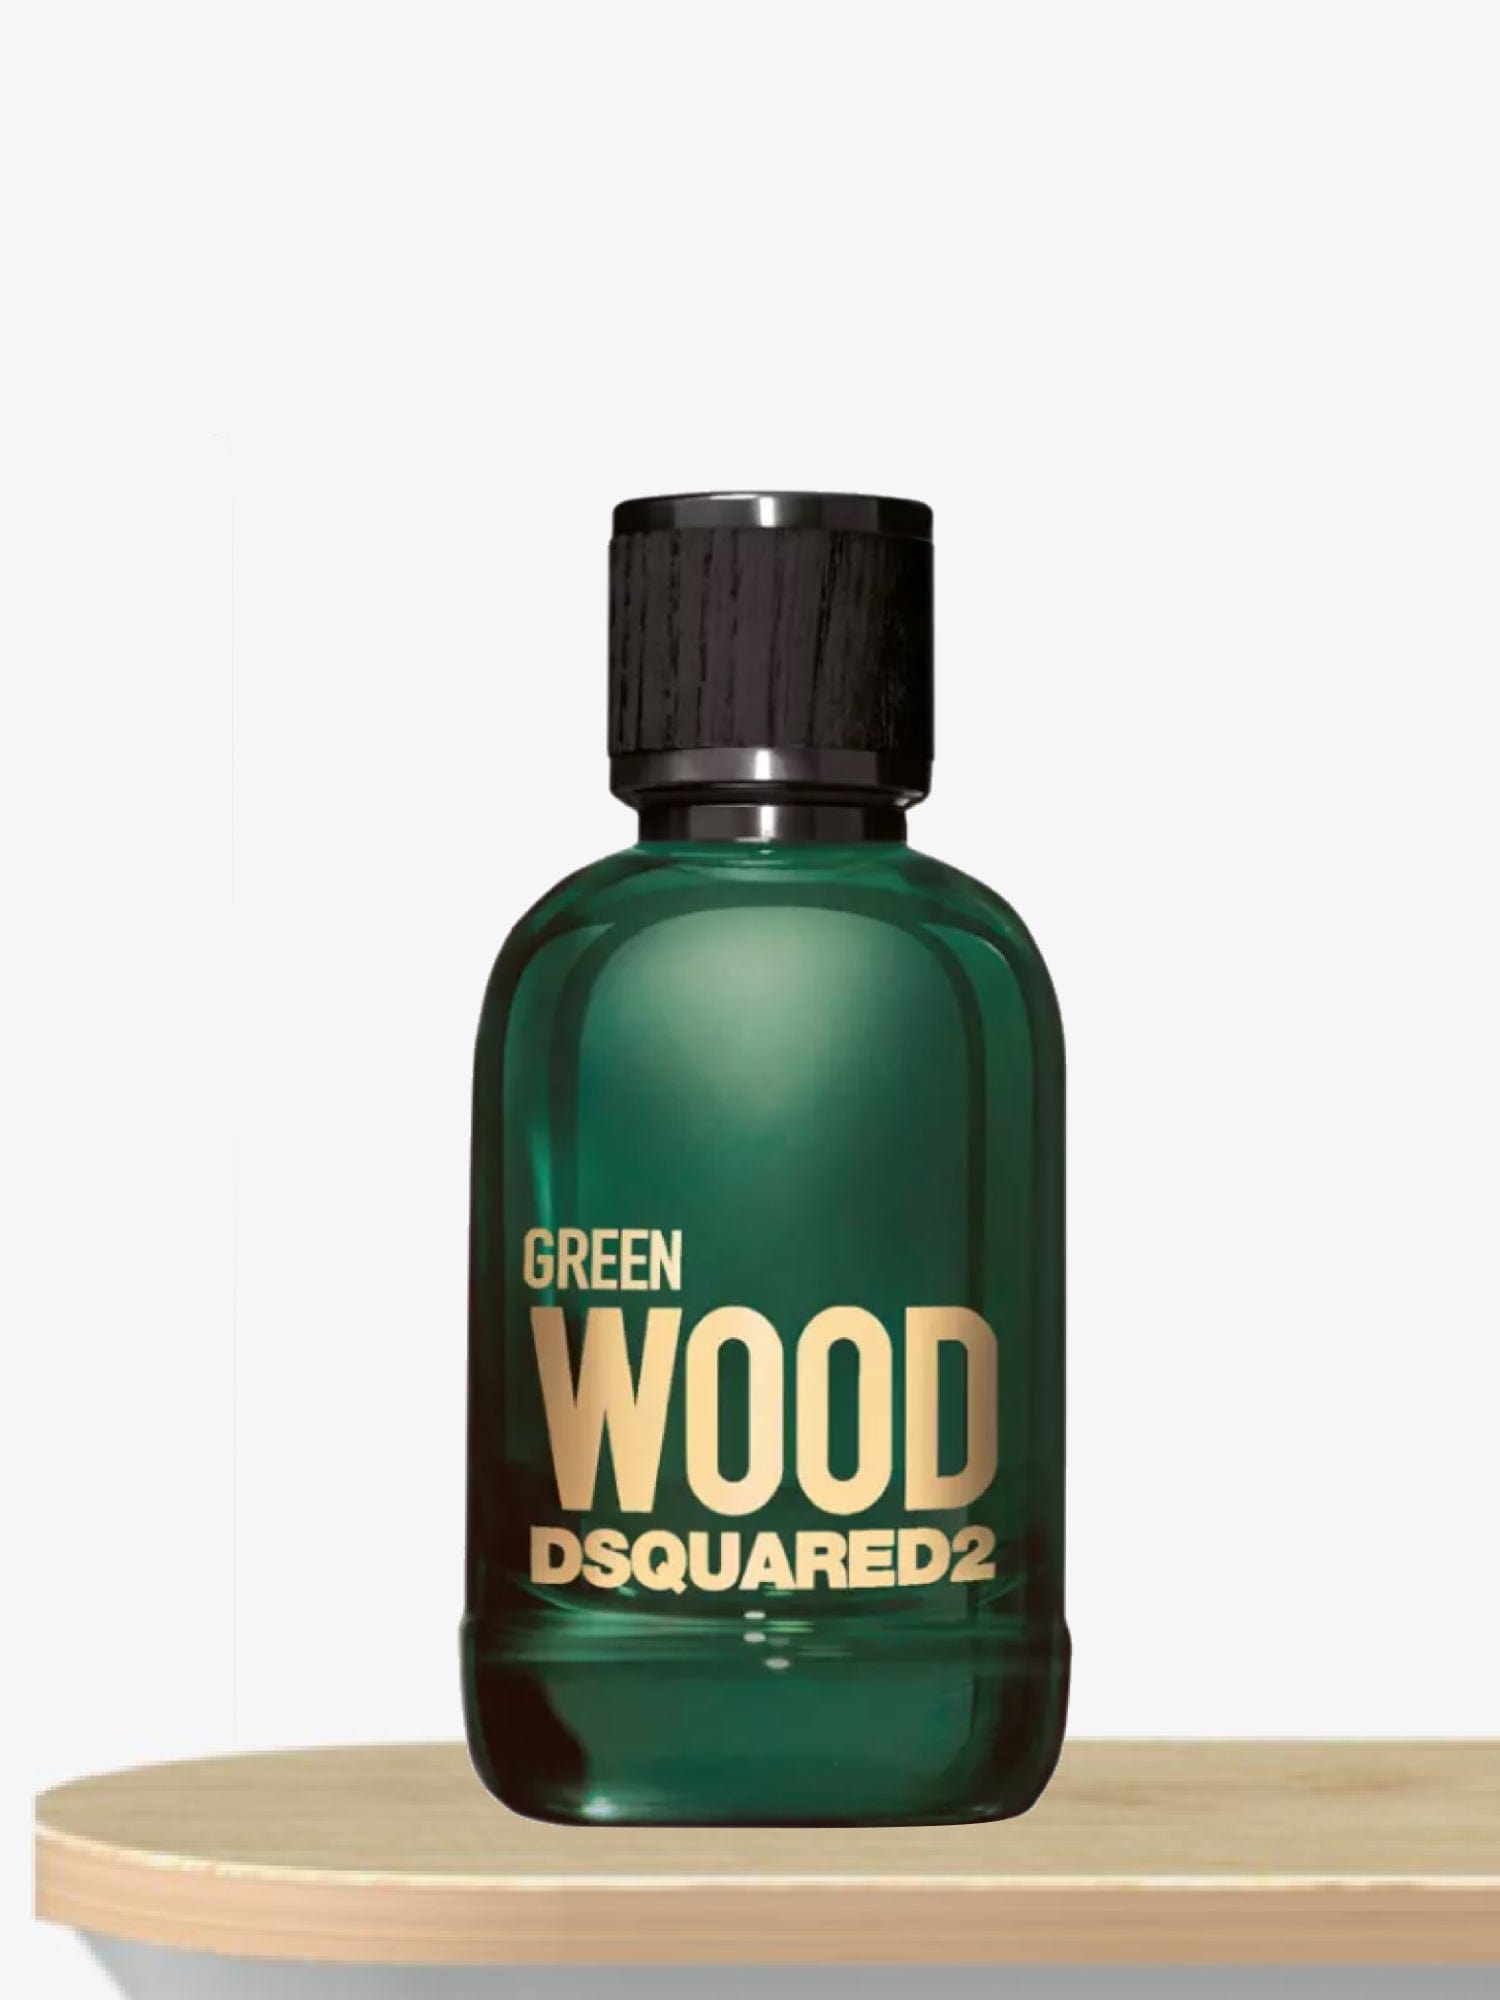 Dsquared2 Green Wood Pour Homme Eau de Toilette 100 mL / Male